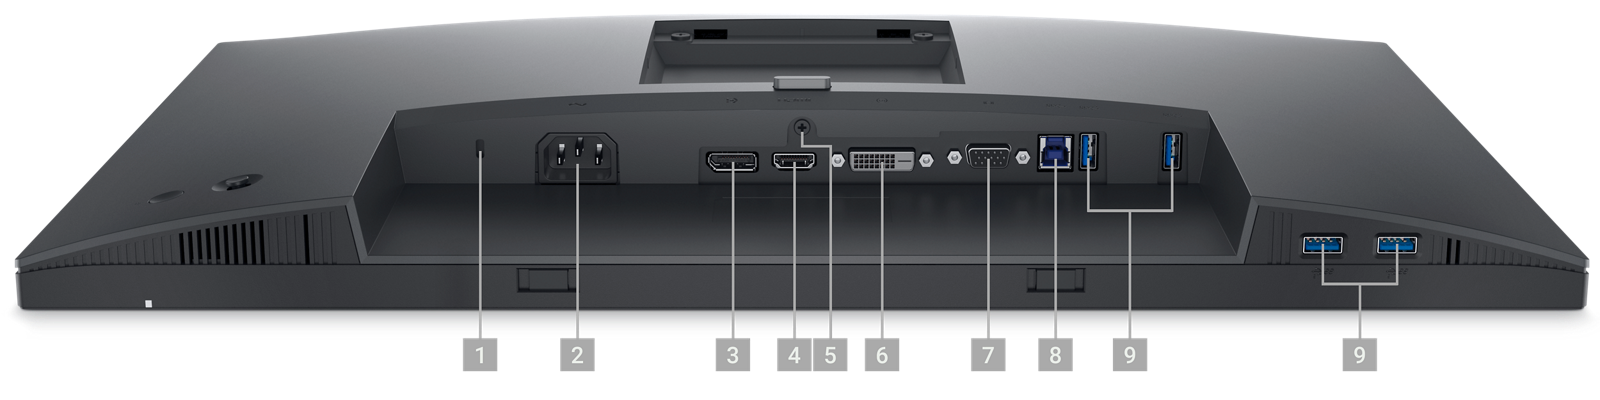 Hình ảnh Màn hình Dell P2423 với màn hình úp xuống và các số từ 1 đến 9 hiển thị các cổng có sẵn bên dưới sản phẩm.